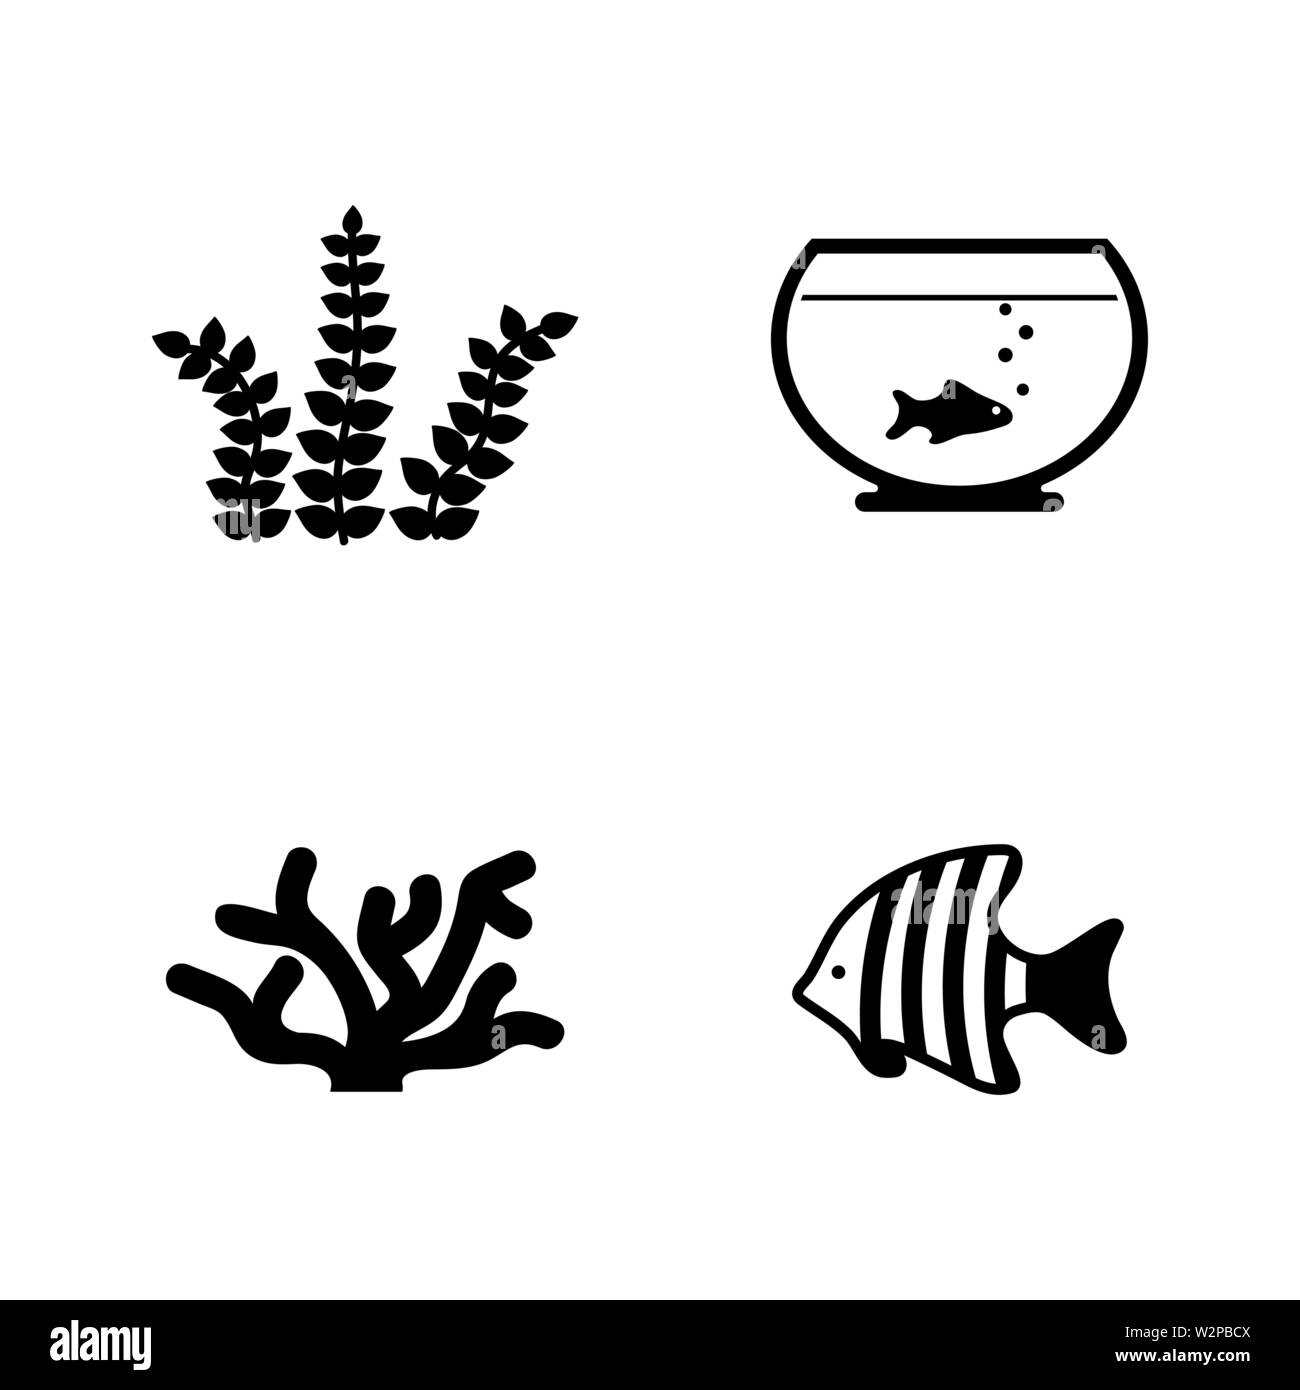 Aquarienbewohner. Einfache ergänzende Vector Icons Set für Video, Mobile Anwendungen, Websites, Print Projekte und ihre Gestaltung. Schwarz Abbildung auf Wh Stock Vektor